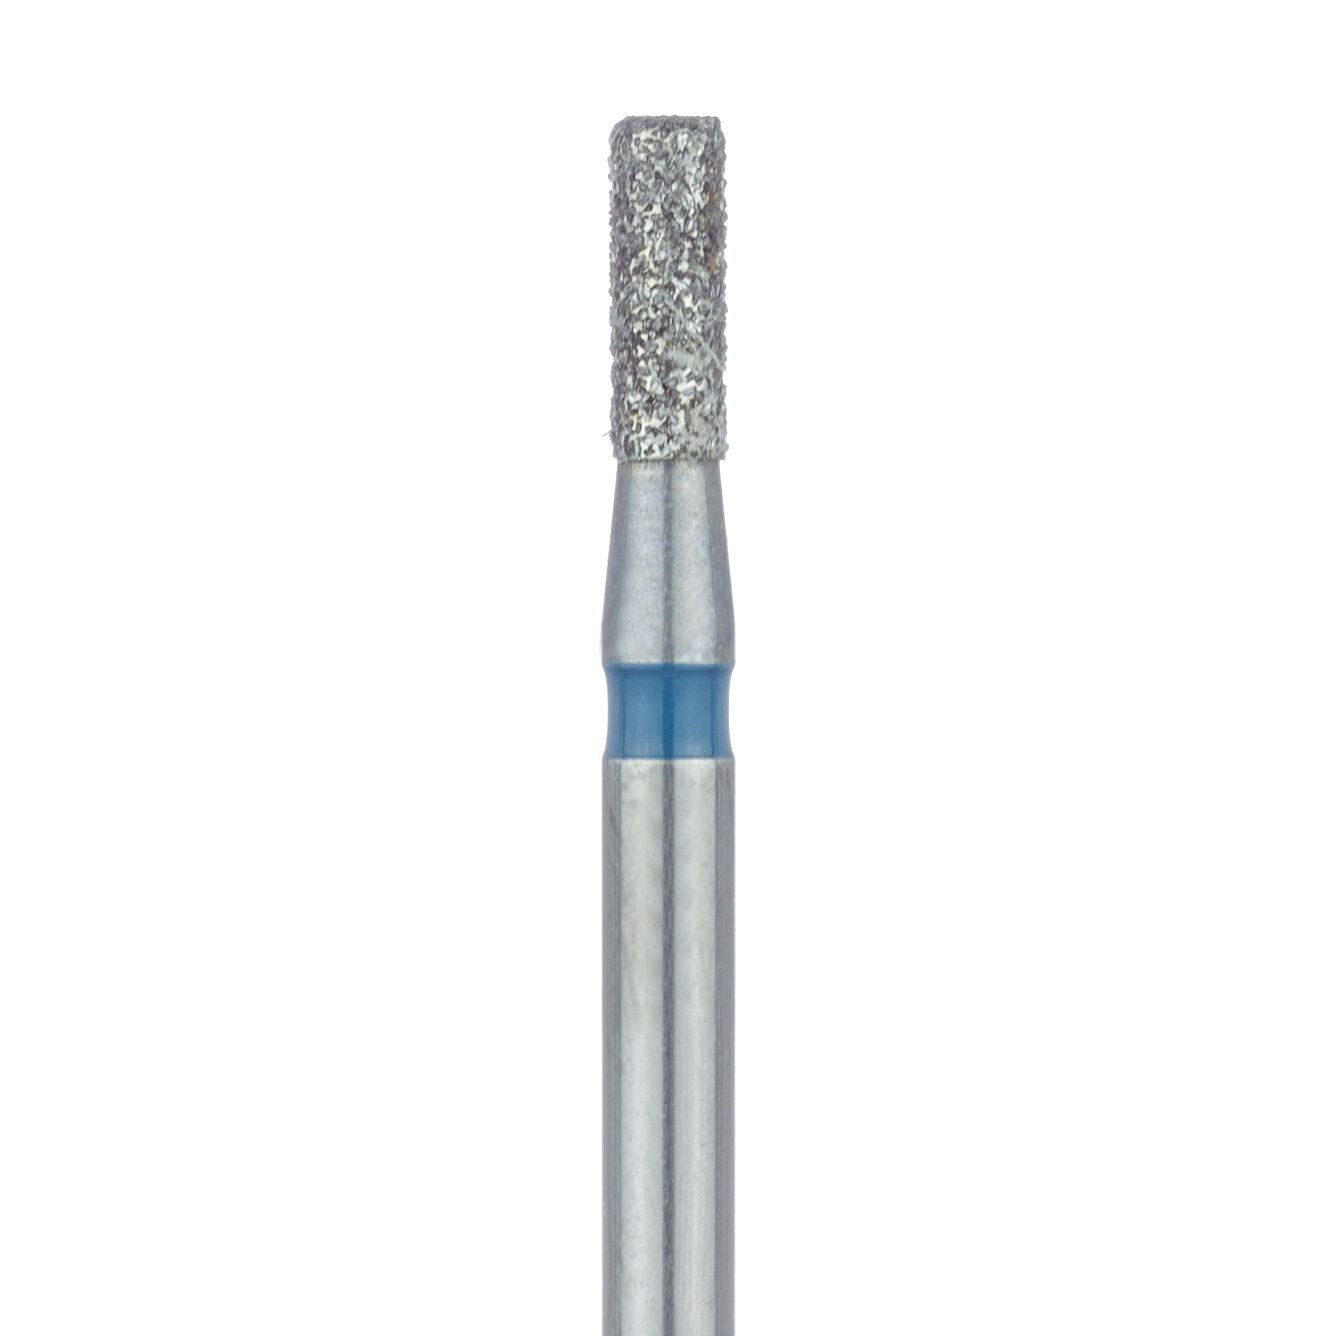 840-014-FG Round Edge Cylinder Diamond Bur, 1.4mm Ø, Medium, FG